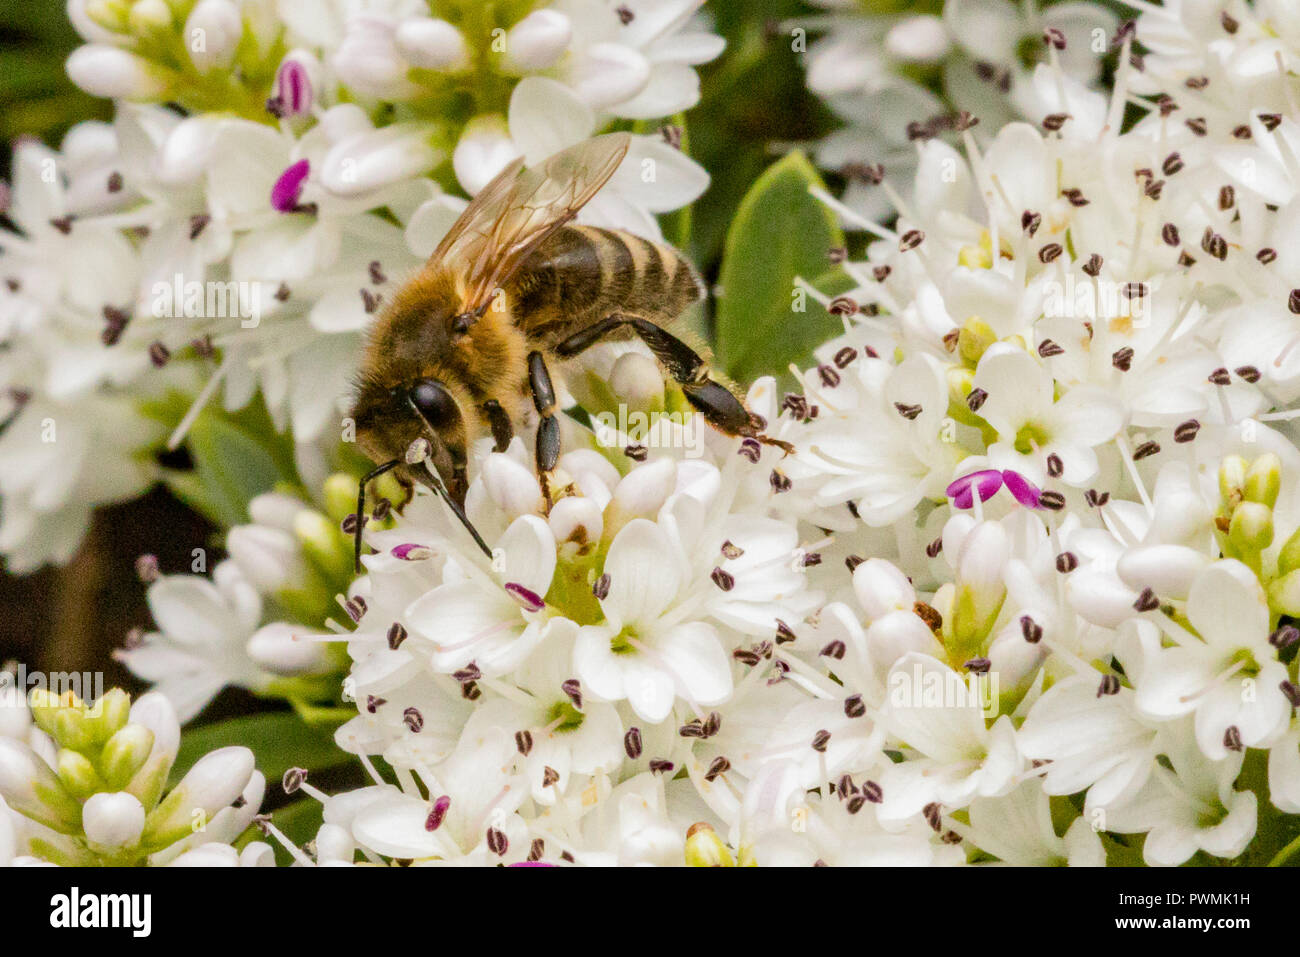 Western Honig Biene sammelt Nektar aus weißen Blumen in einem Garten Stockfoto